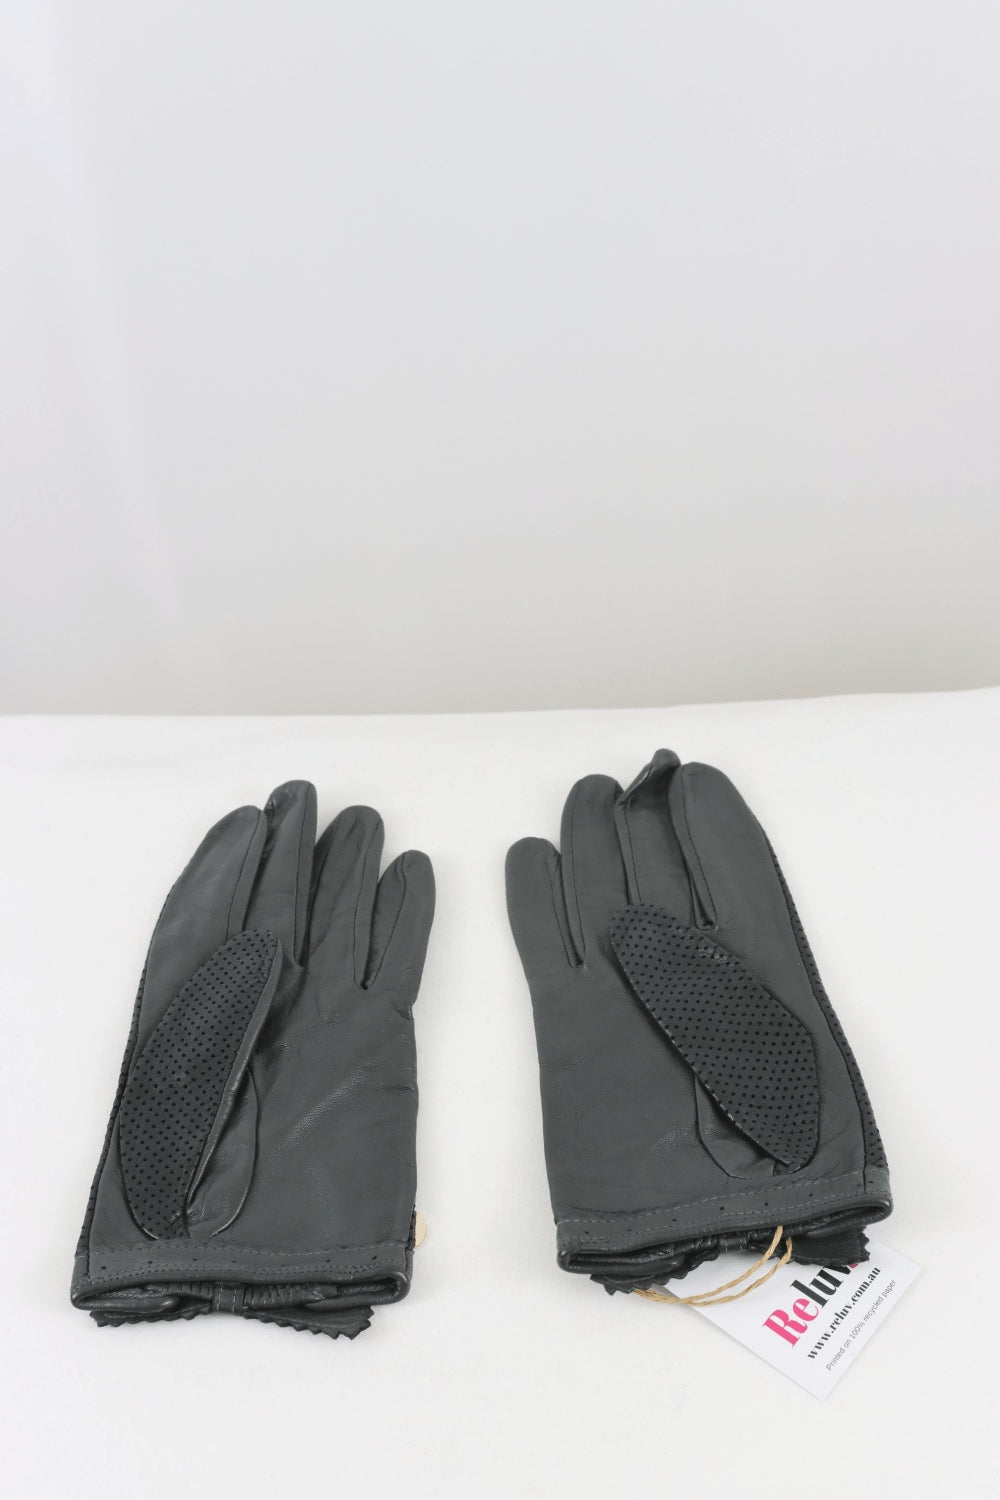 Mimco Gloves Black Gloves